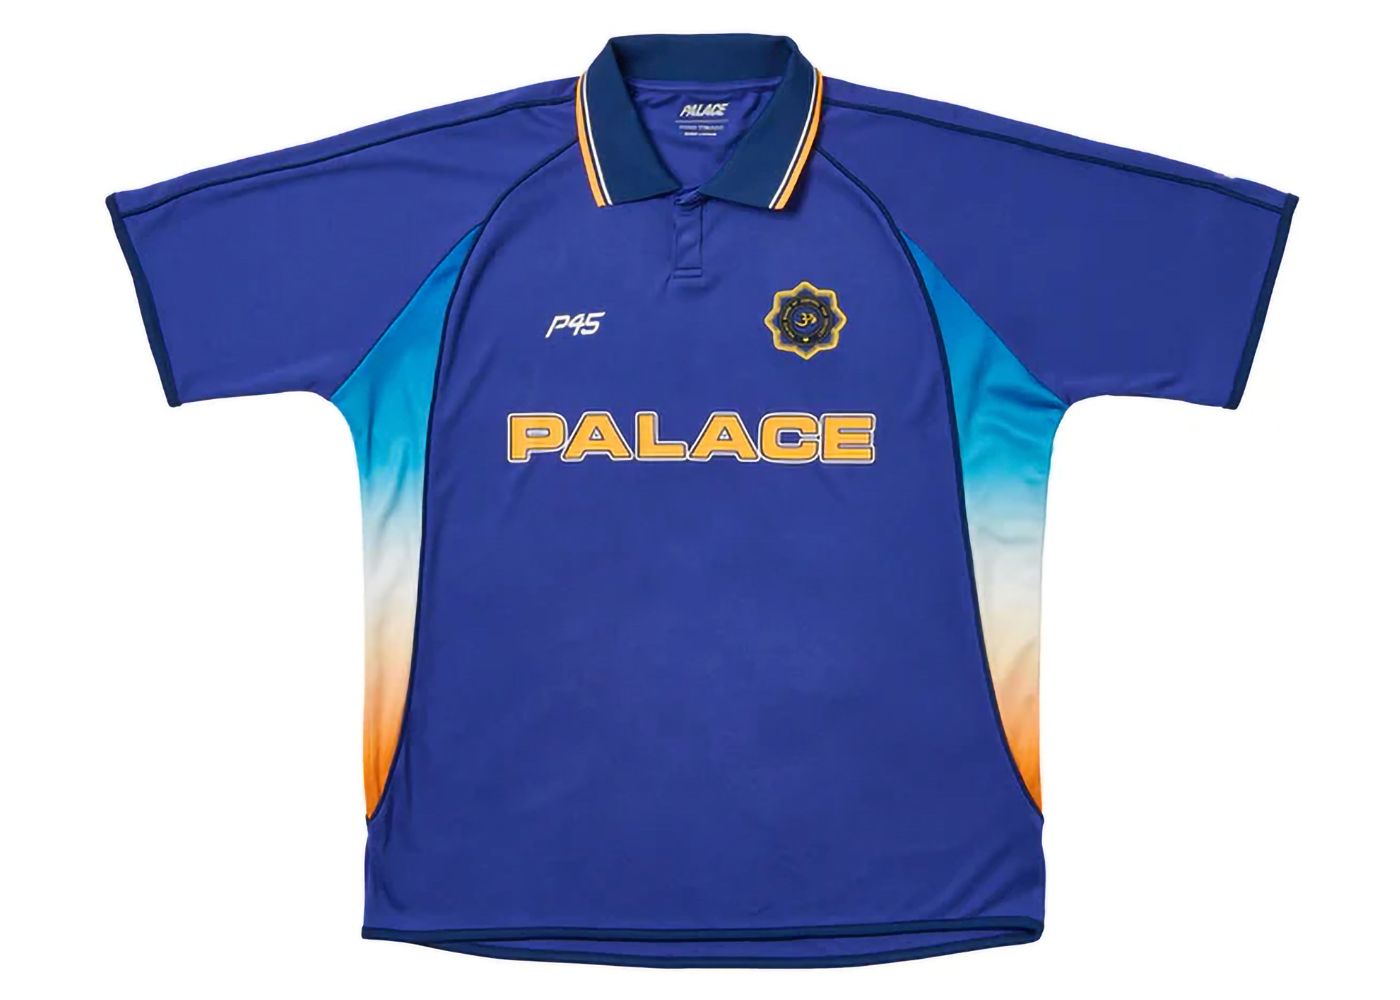 Palace Cricket Jersey Blue